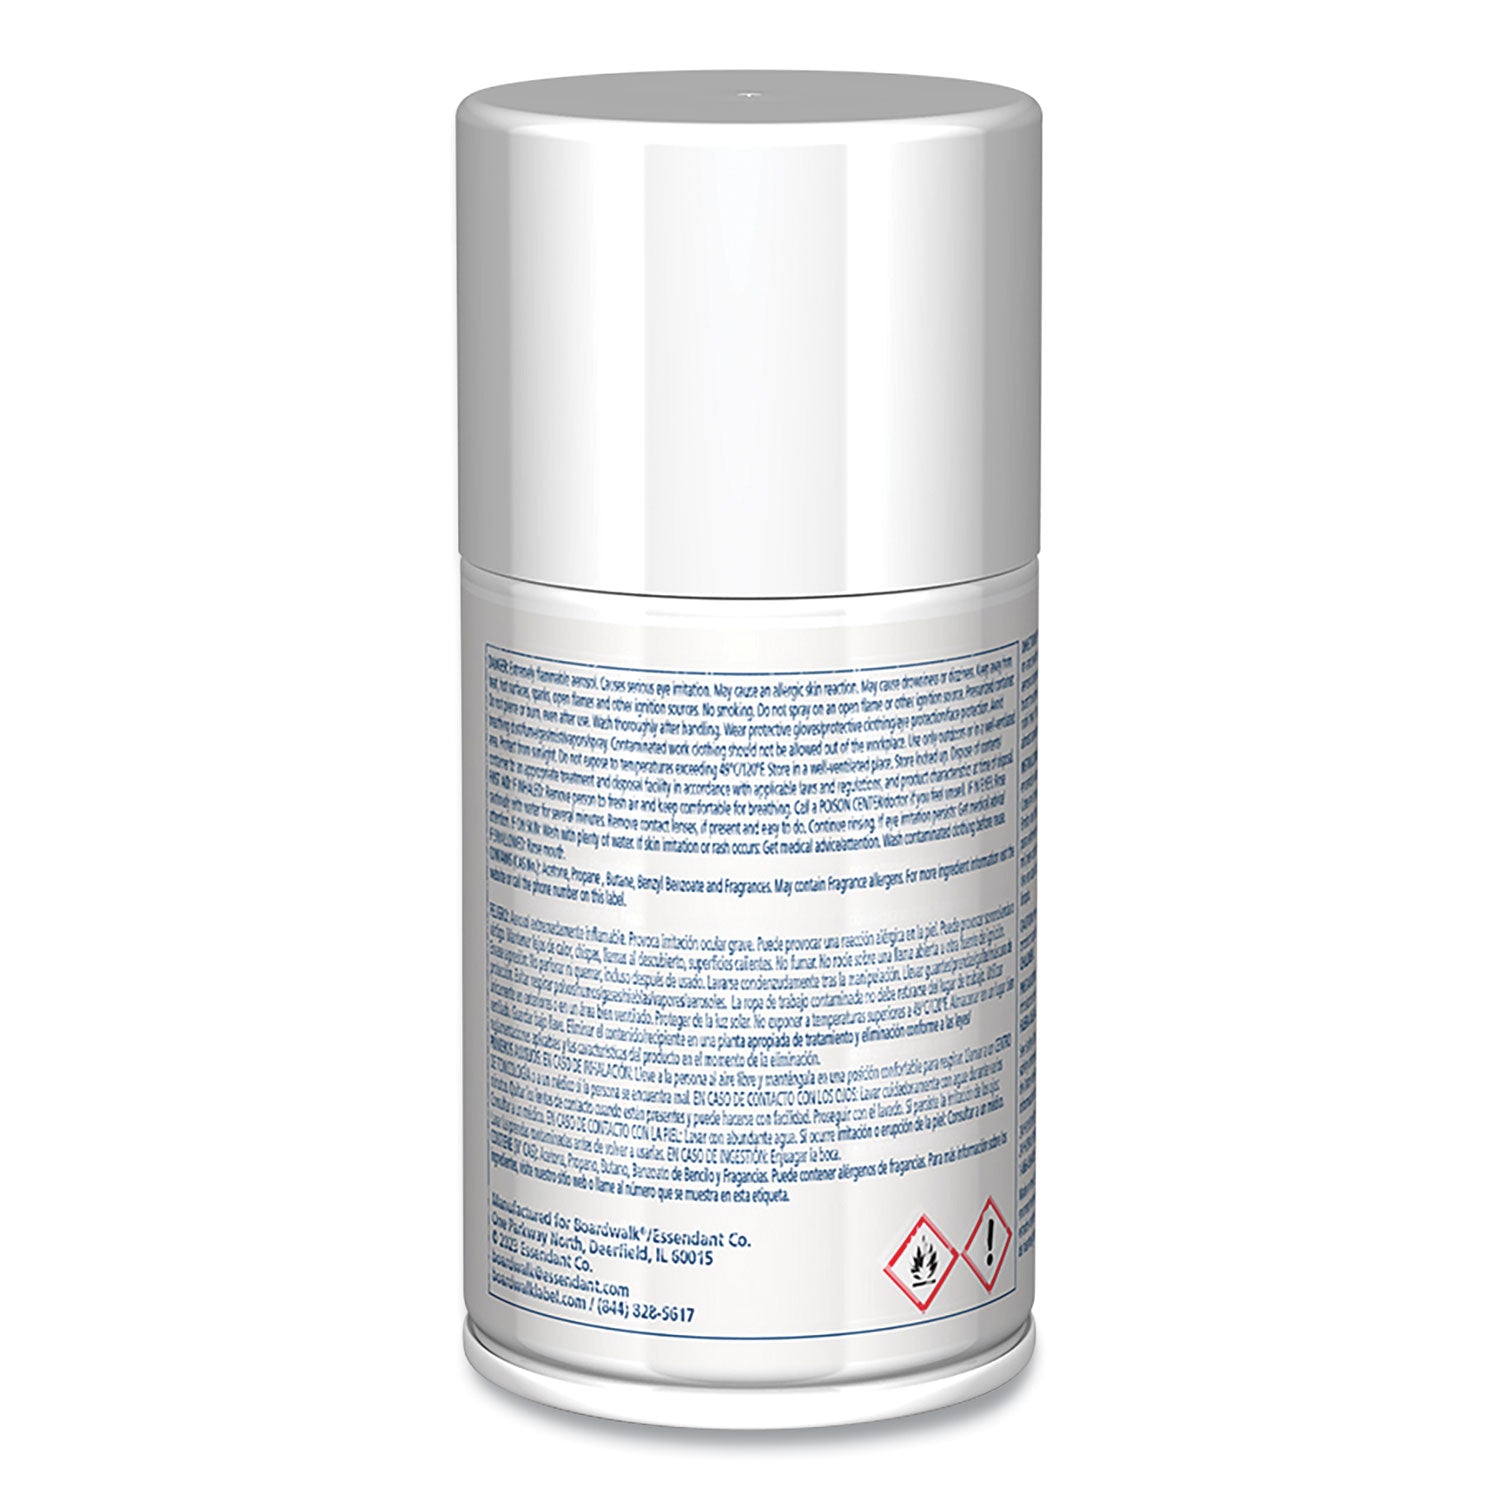 metered-air-freshener-refill-powder-mist-7-oz-aerosol-spray-12-carton_bwk902 - 4